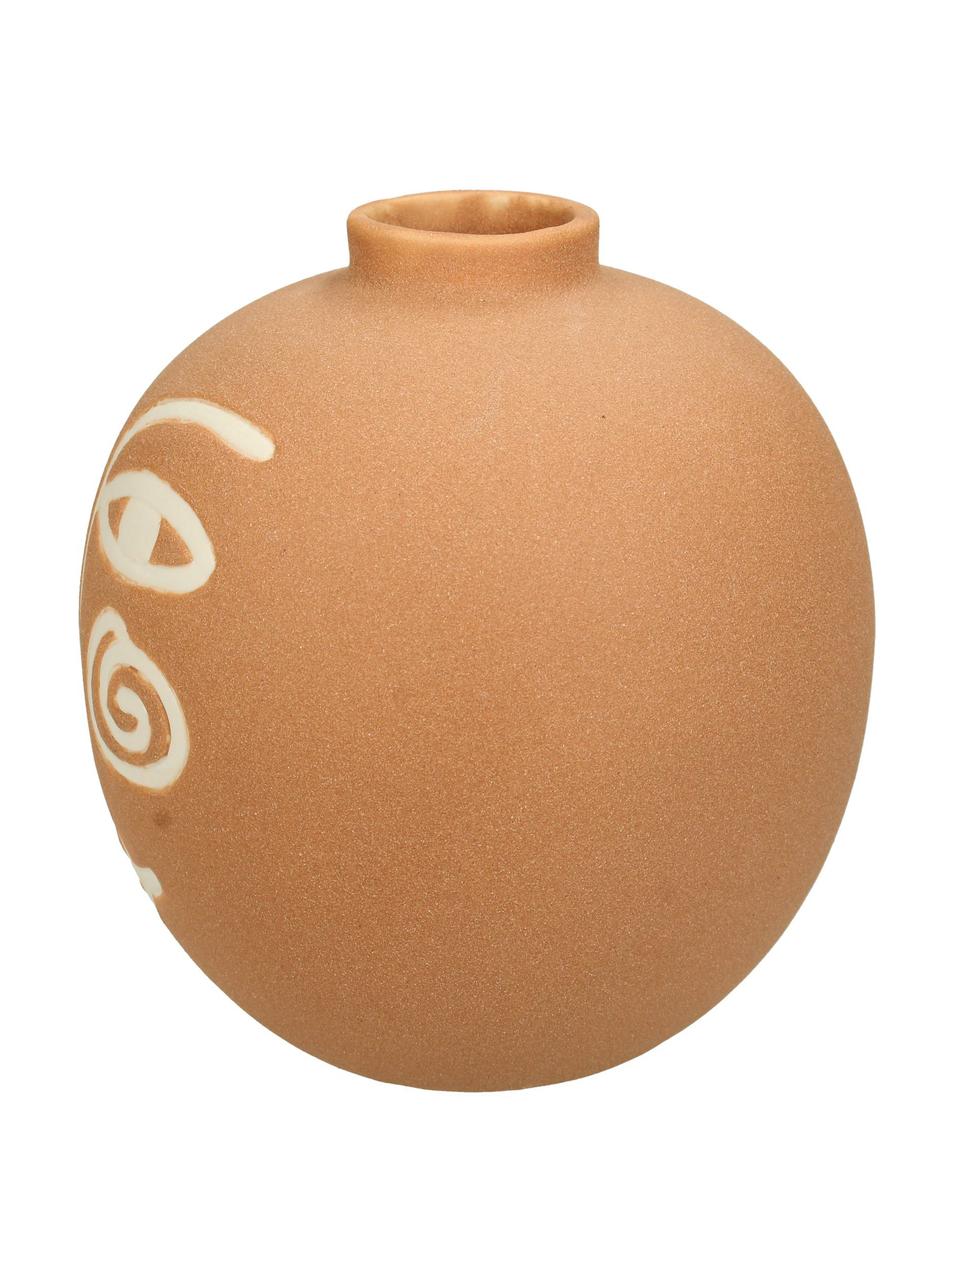 Vase Blink aus Steingut, Steingut, Orange, Weiss, Ø 16 x H 16 cm